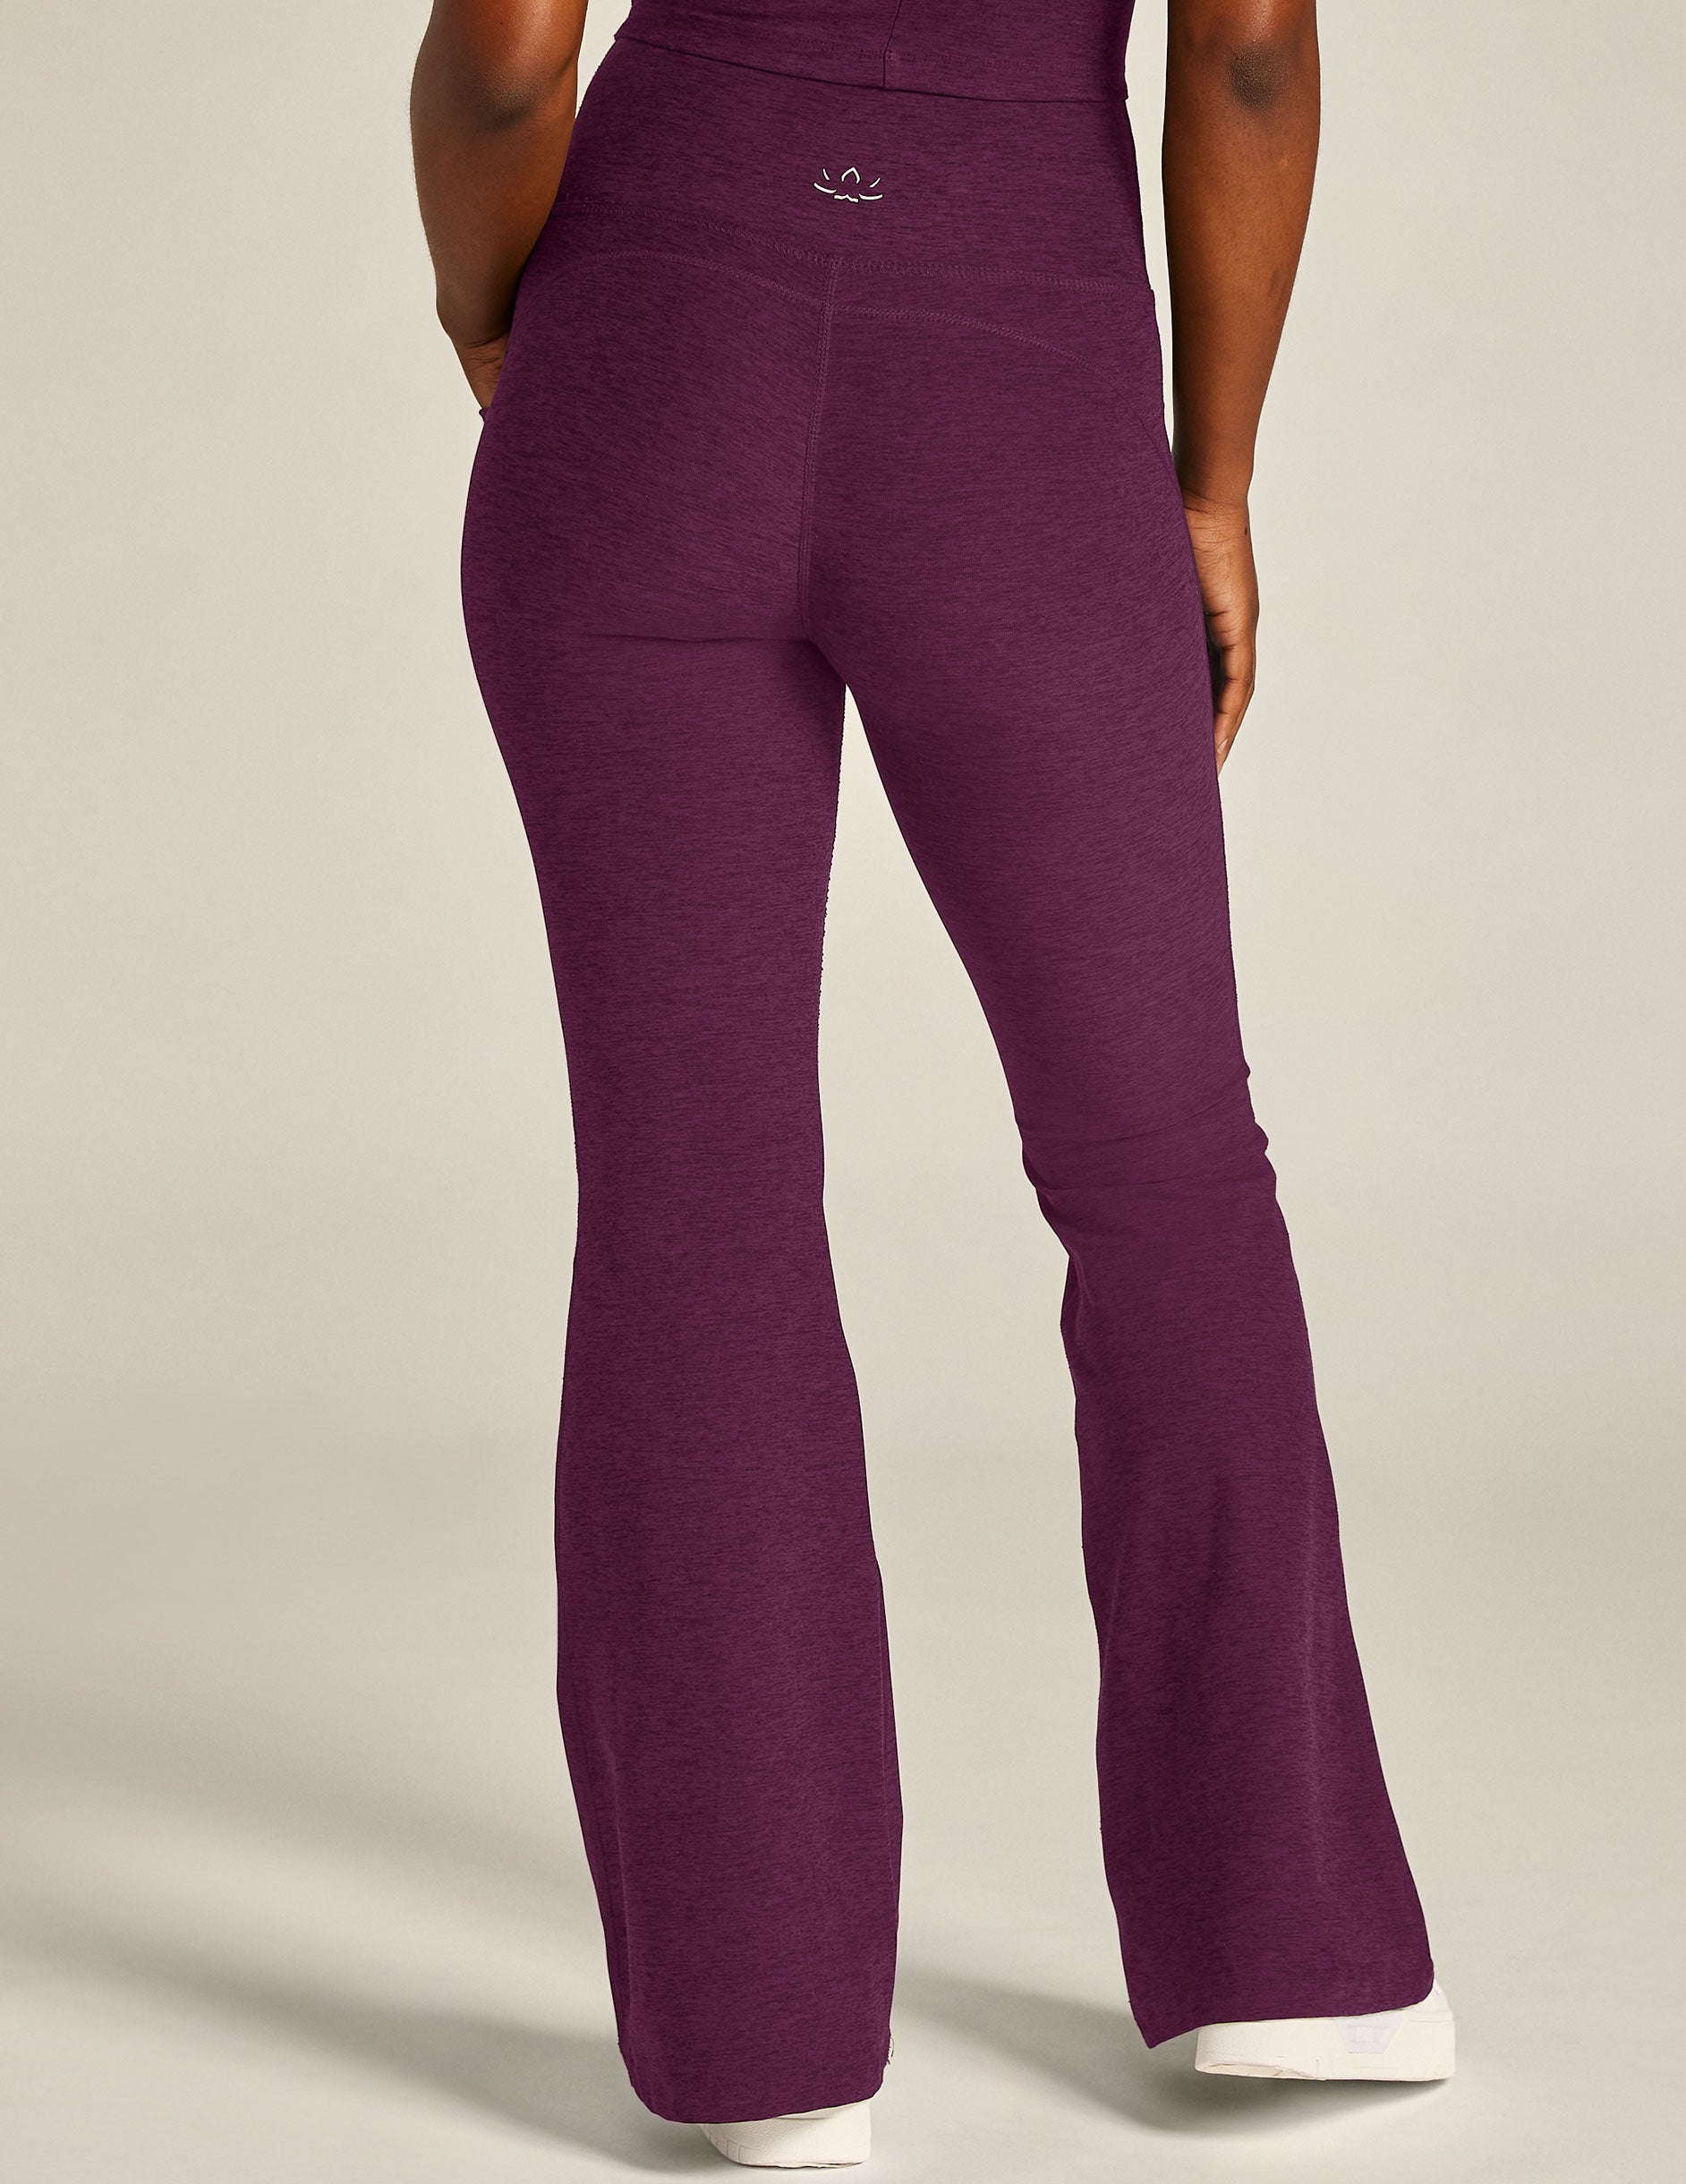 purple high-waisted pocket flare pants. 